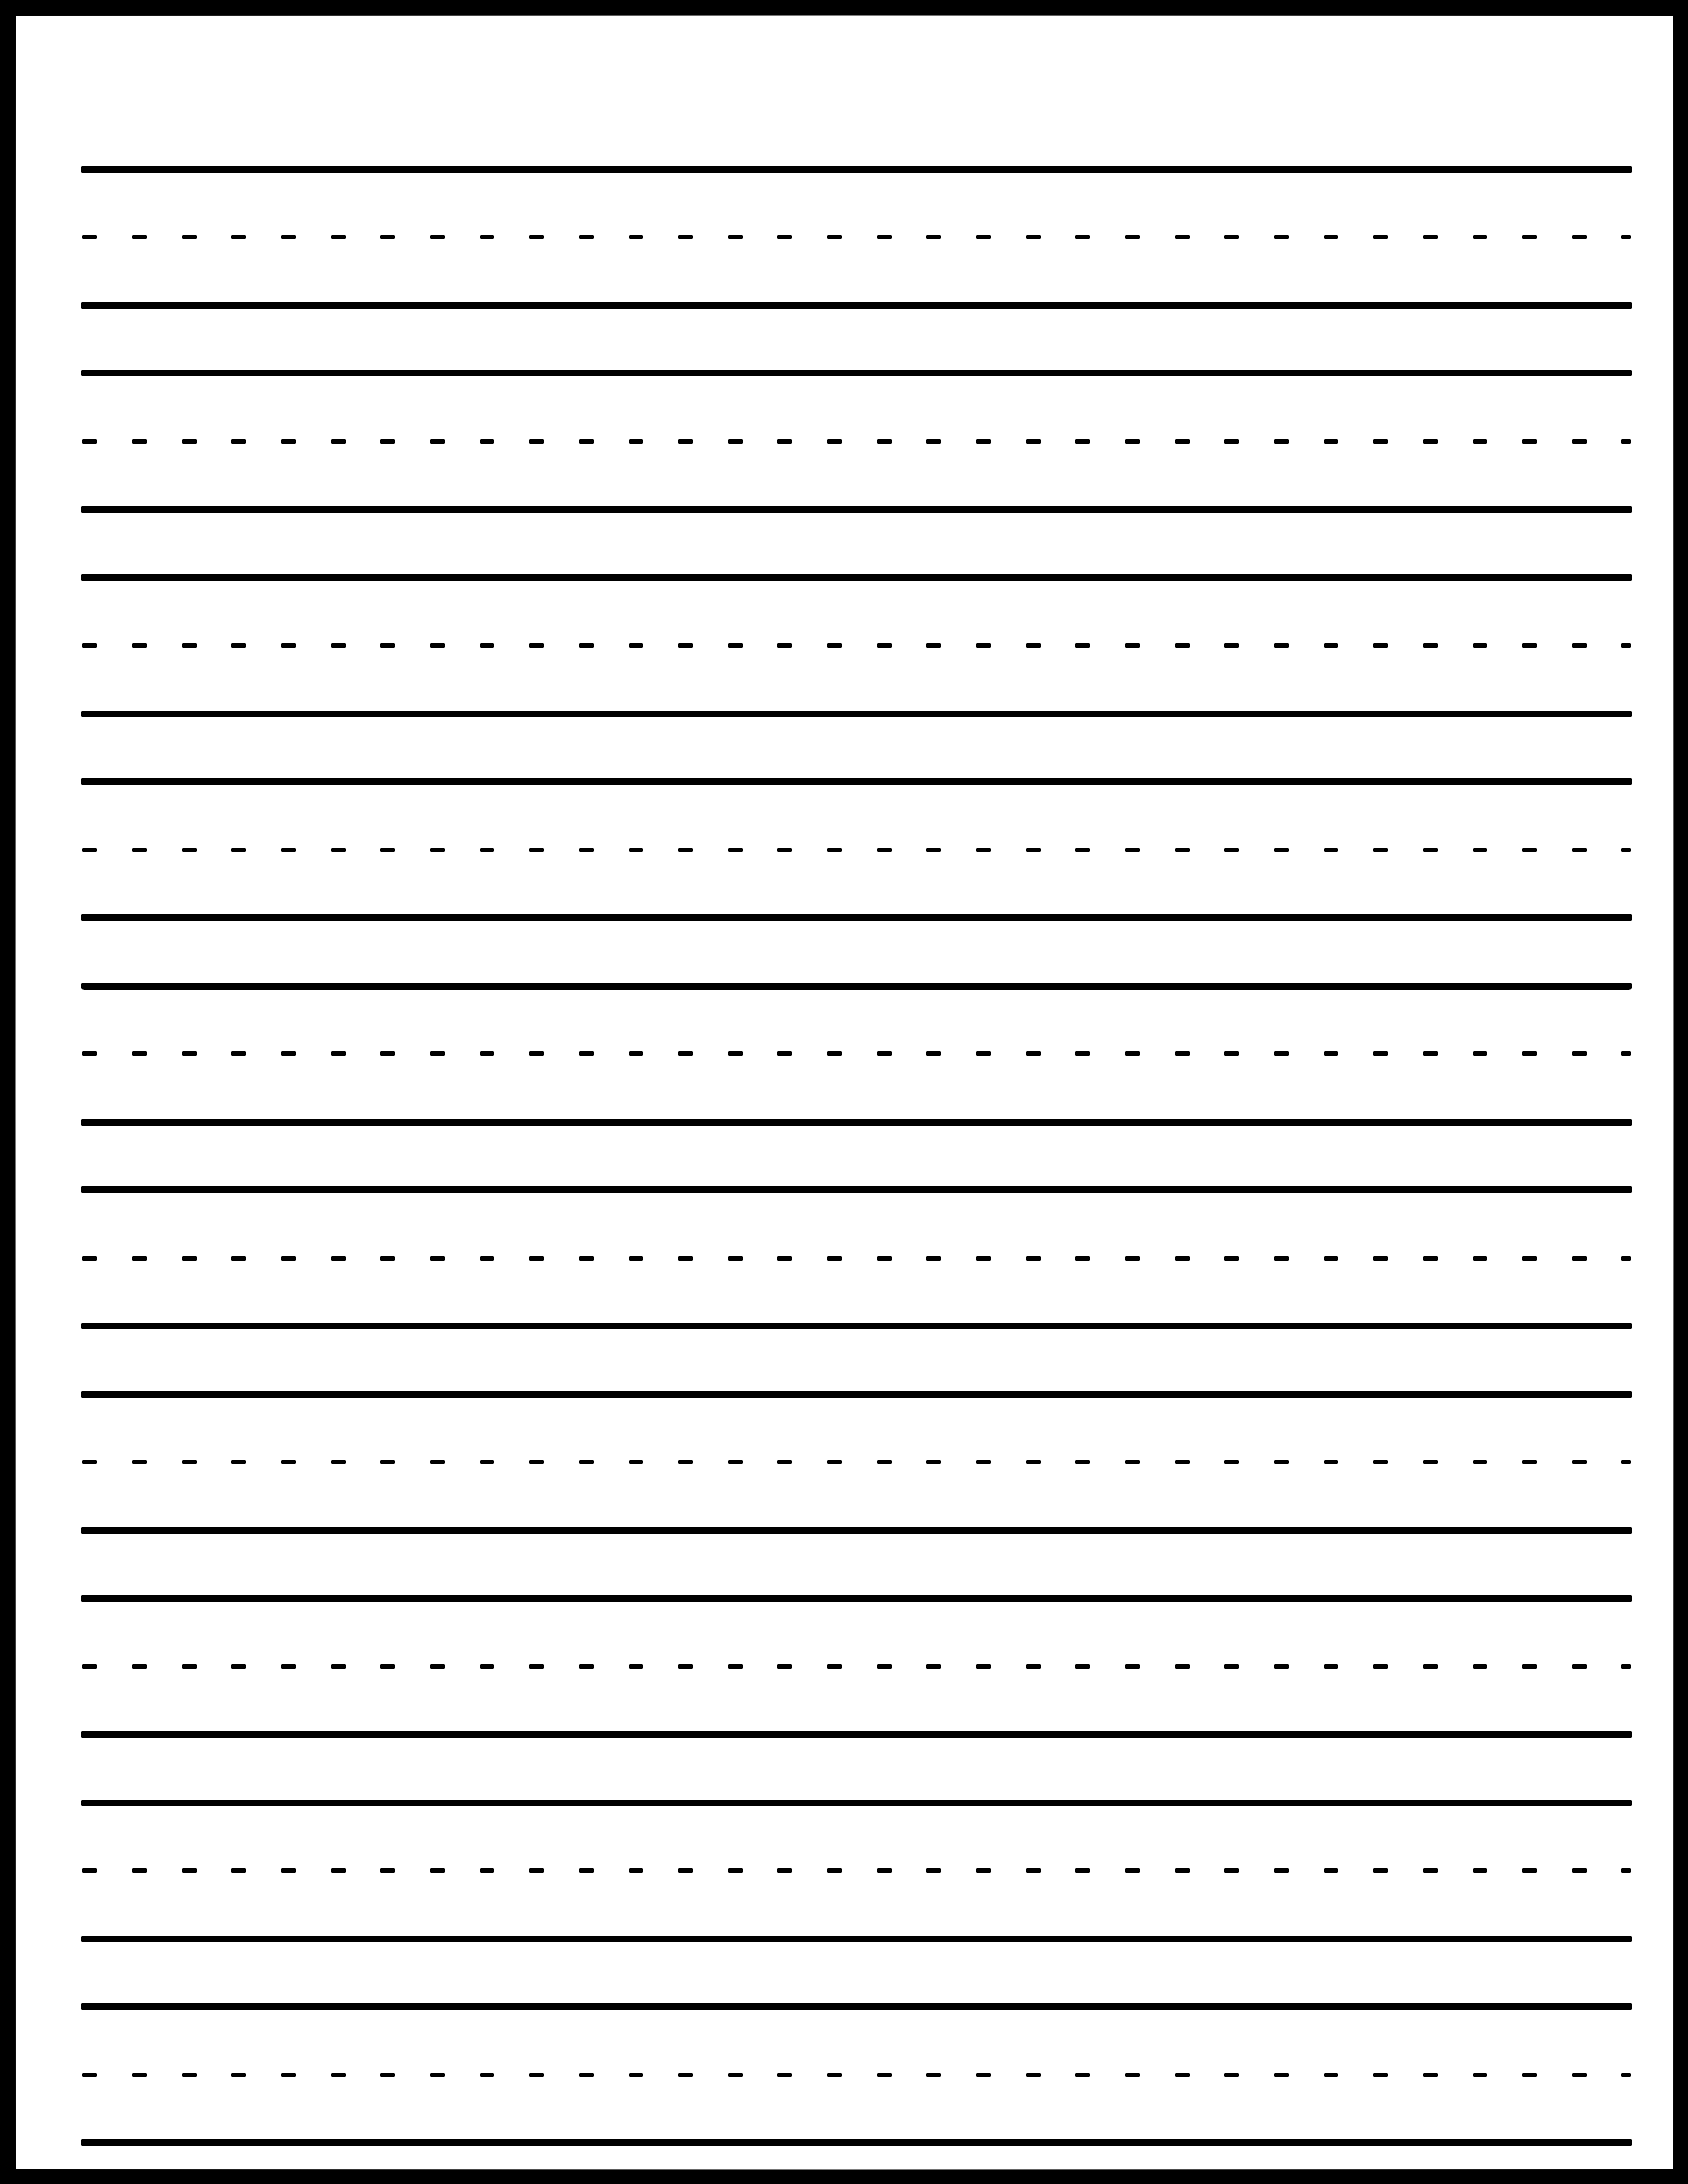 Download Kindergarten handwriting practice paper with dotted lines